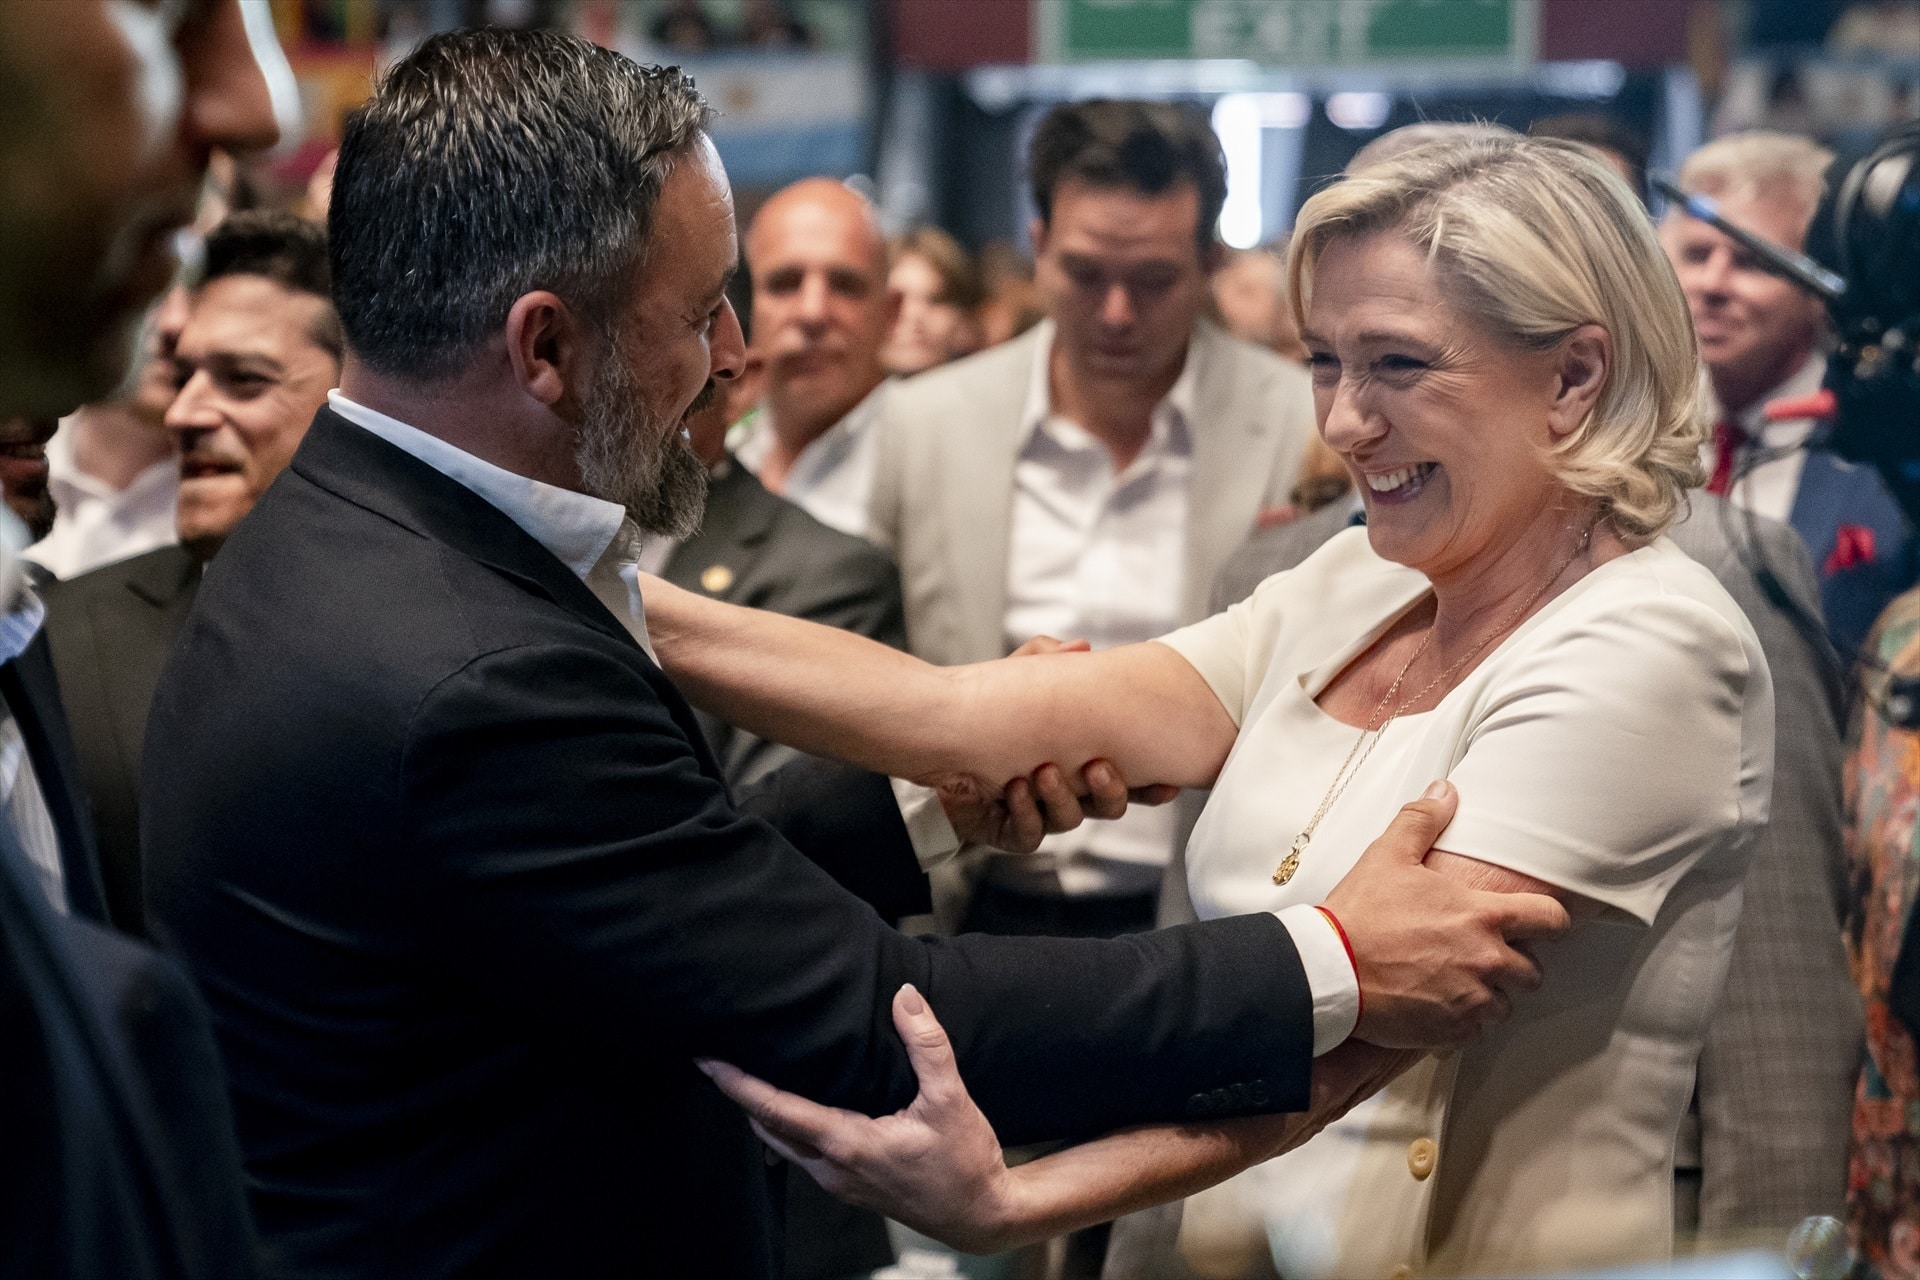 El presidente de Vox, Santiago Abascal, saluda a la líder de la Reagrupación Nacional francesa, Marine Le Pen, a su llegada al acto celebrado en el Palacio de Vistalegre, en Madrid